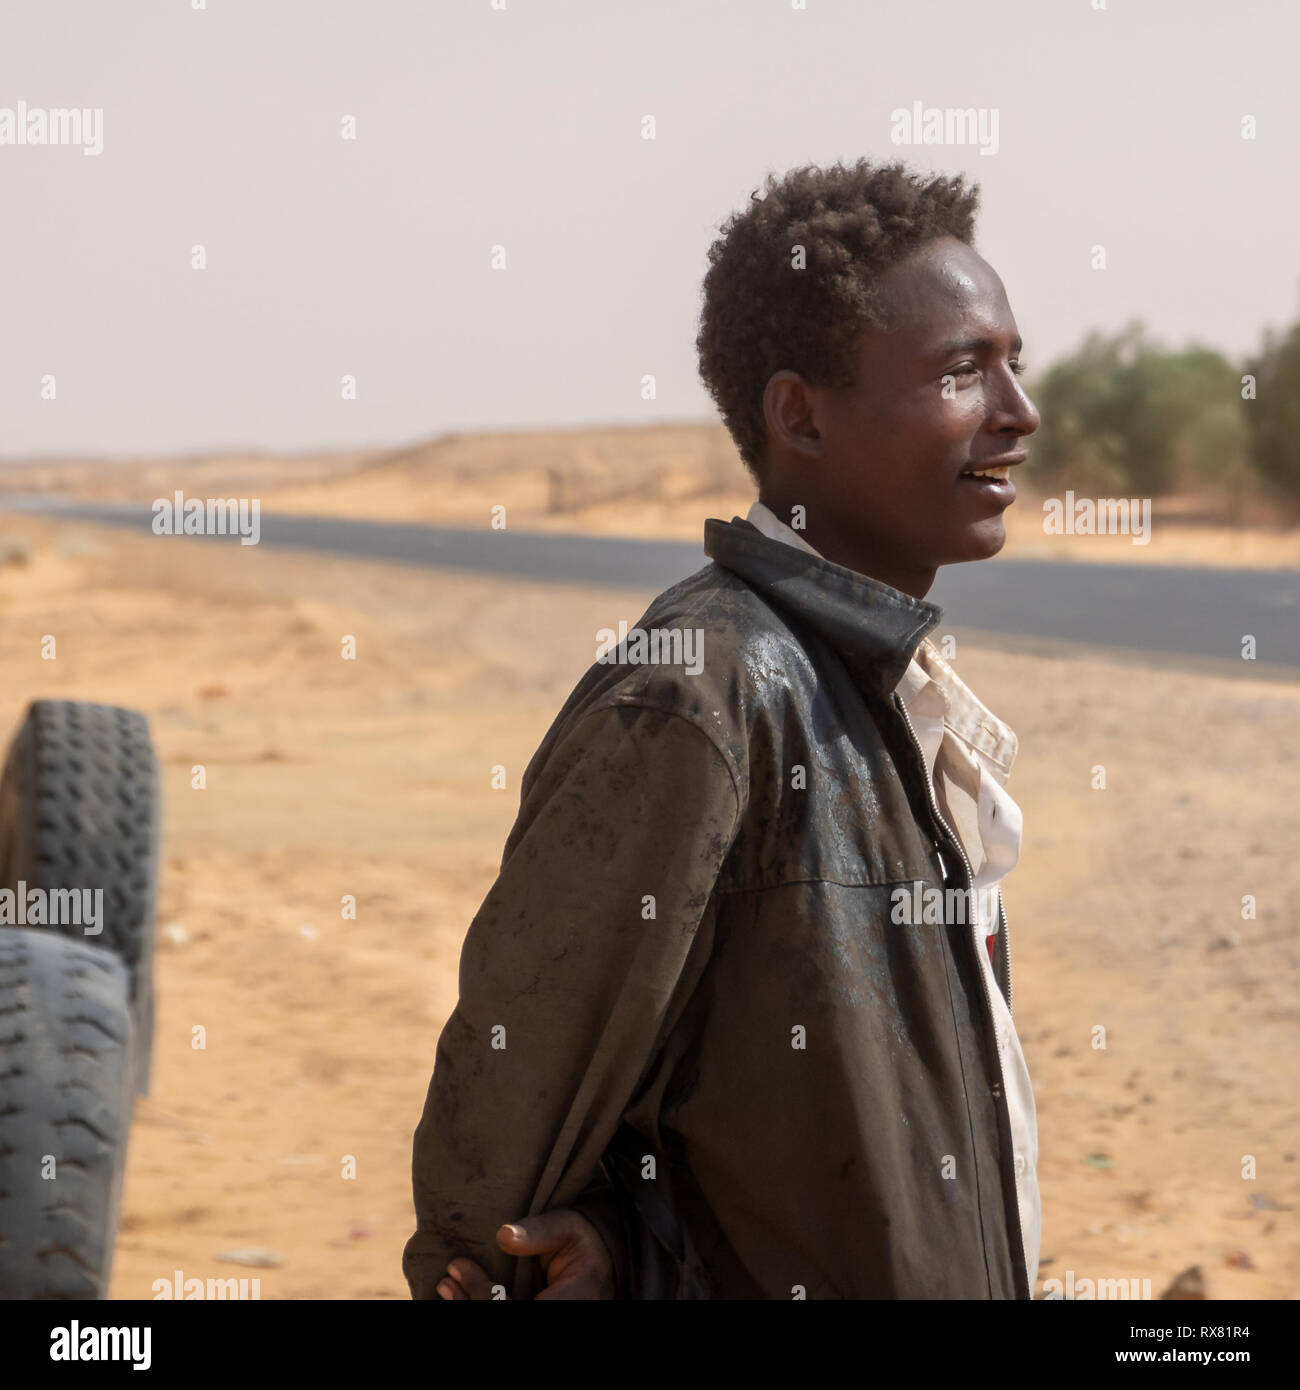 Kerma, au Soudan, le 8 février, 2019. : Jeune homme souriant soudanais en portrait sur la route à travers le désert dans le nord du Soudan avec de vieux cuir usé jmd Banque D'Images